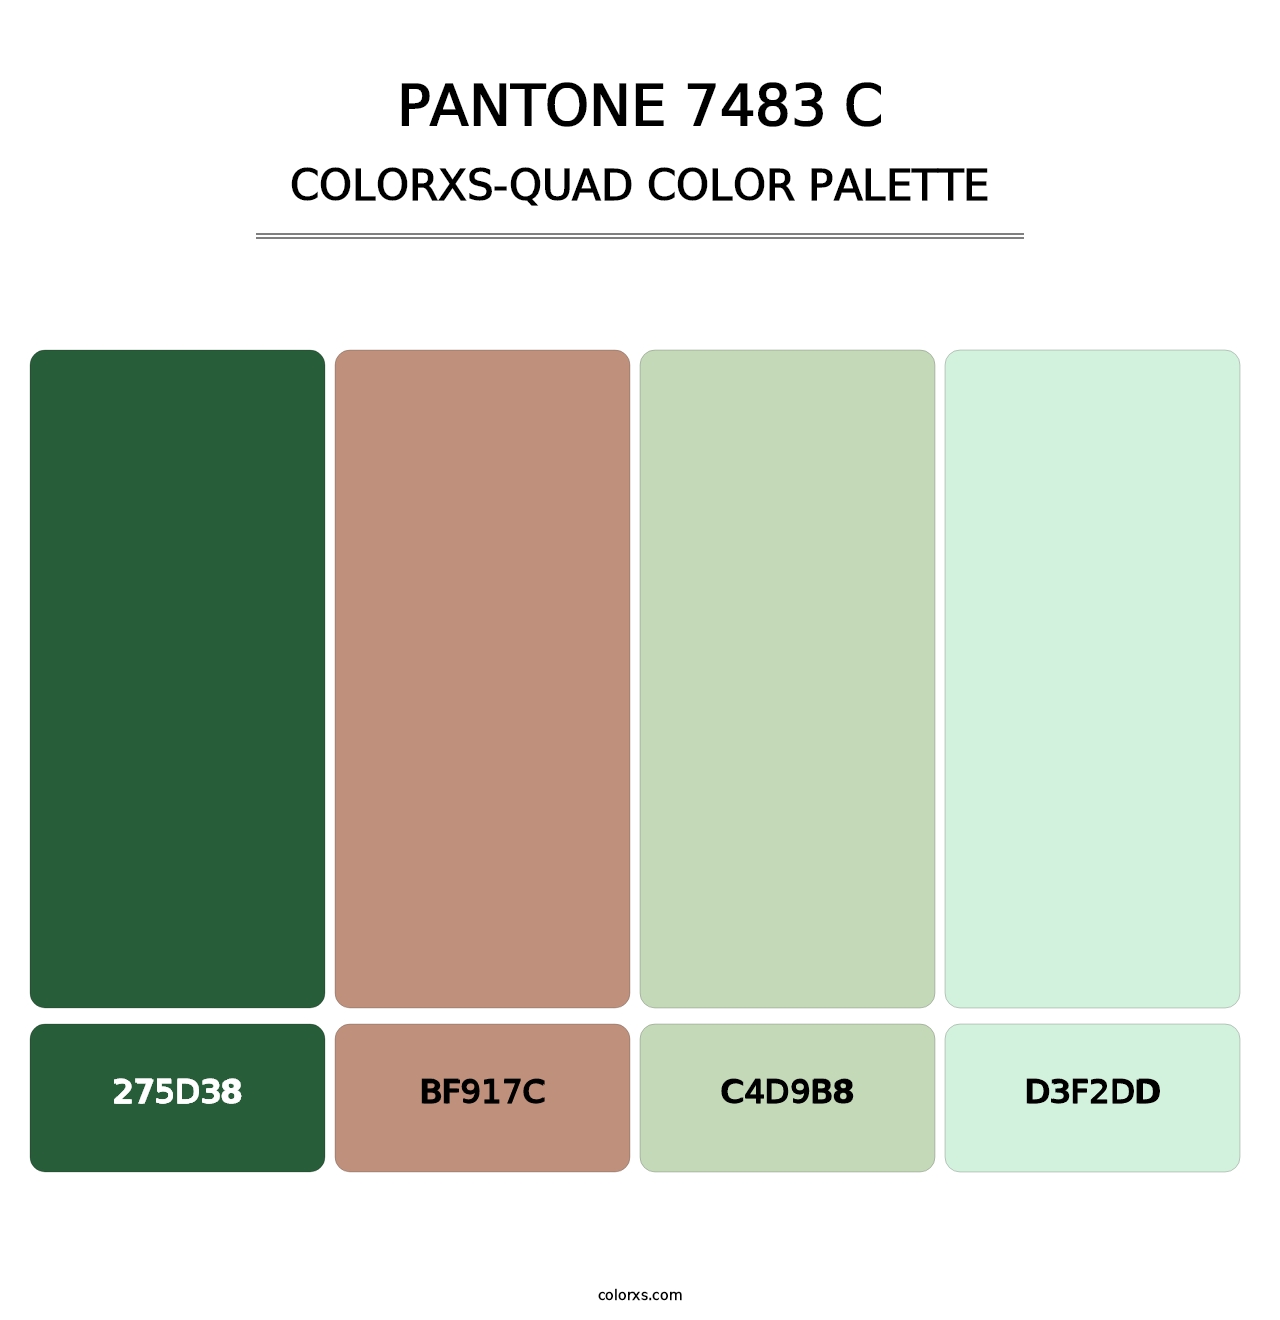 PANTONE 7483 C - Colorxs Quad Palette